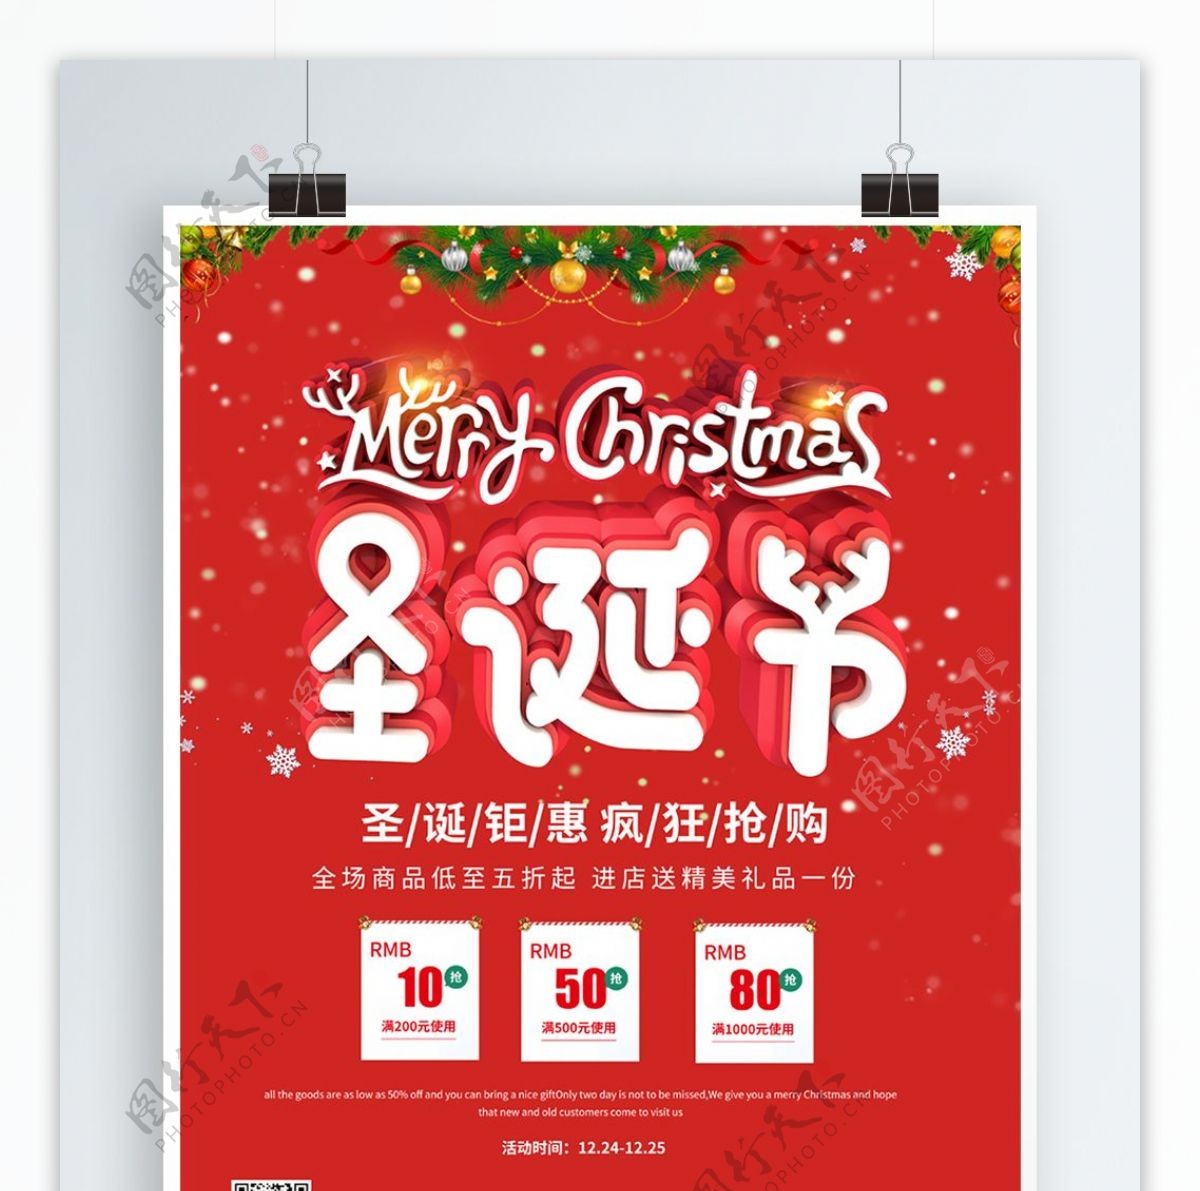 C4D温馨圣诞节促销节日海报